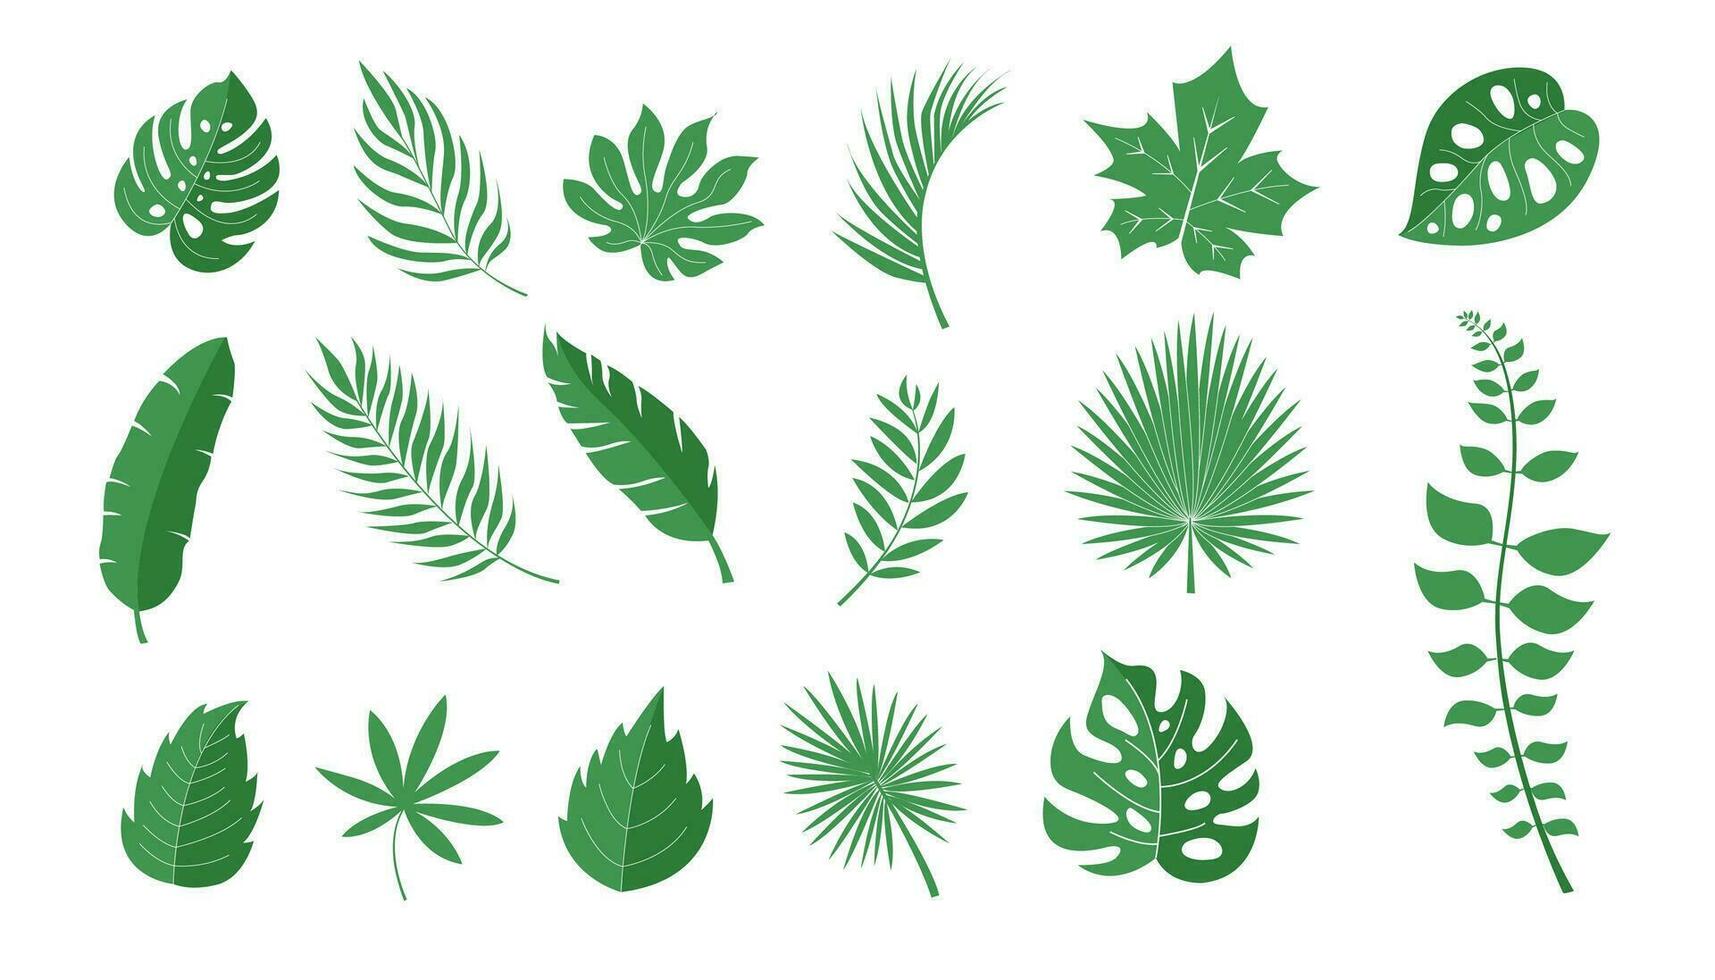 kleurrijk hand- getrokken verzameling van tropisch bladeren vector illustratie